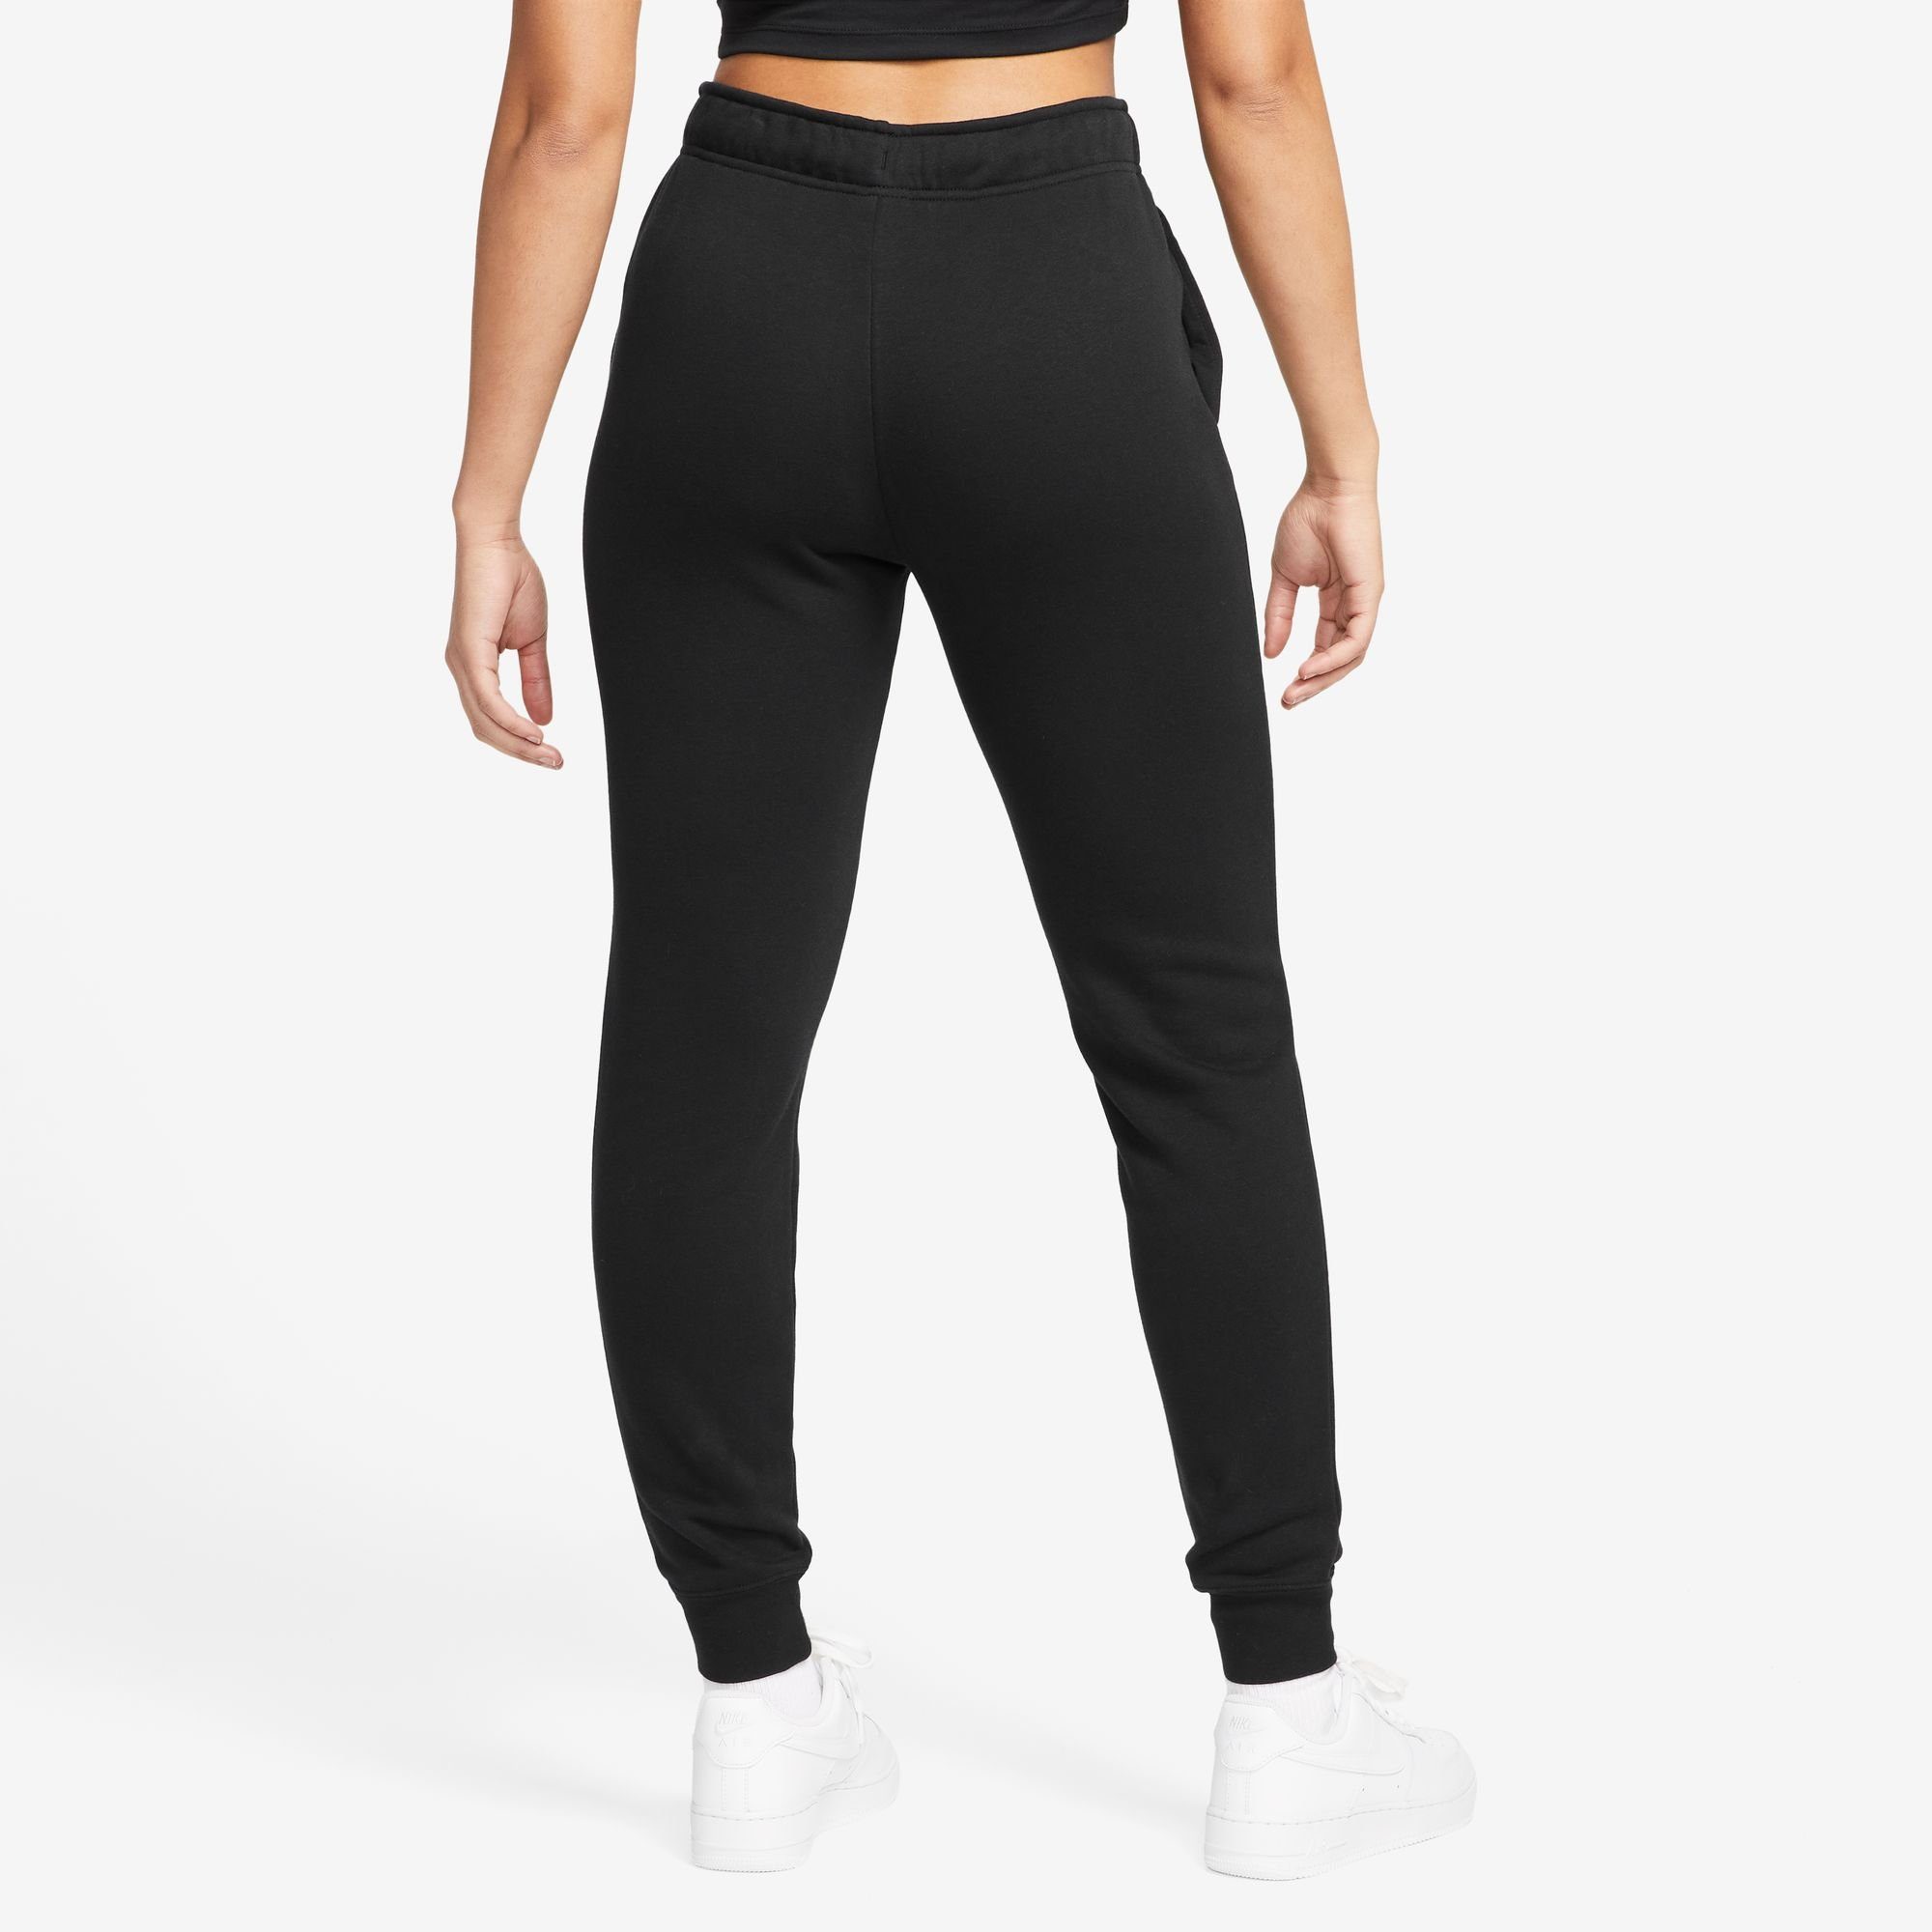 WOMEN'S CLUB Nike PANTS Sportswear Jogginghose SHINE BLACK MID-RISE FLEECE